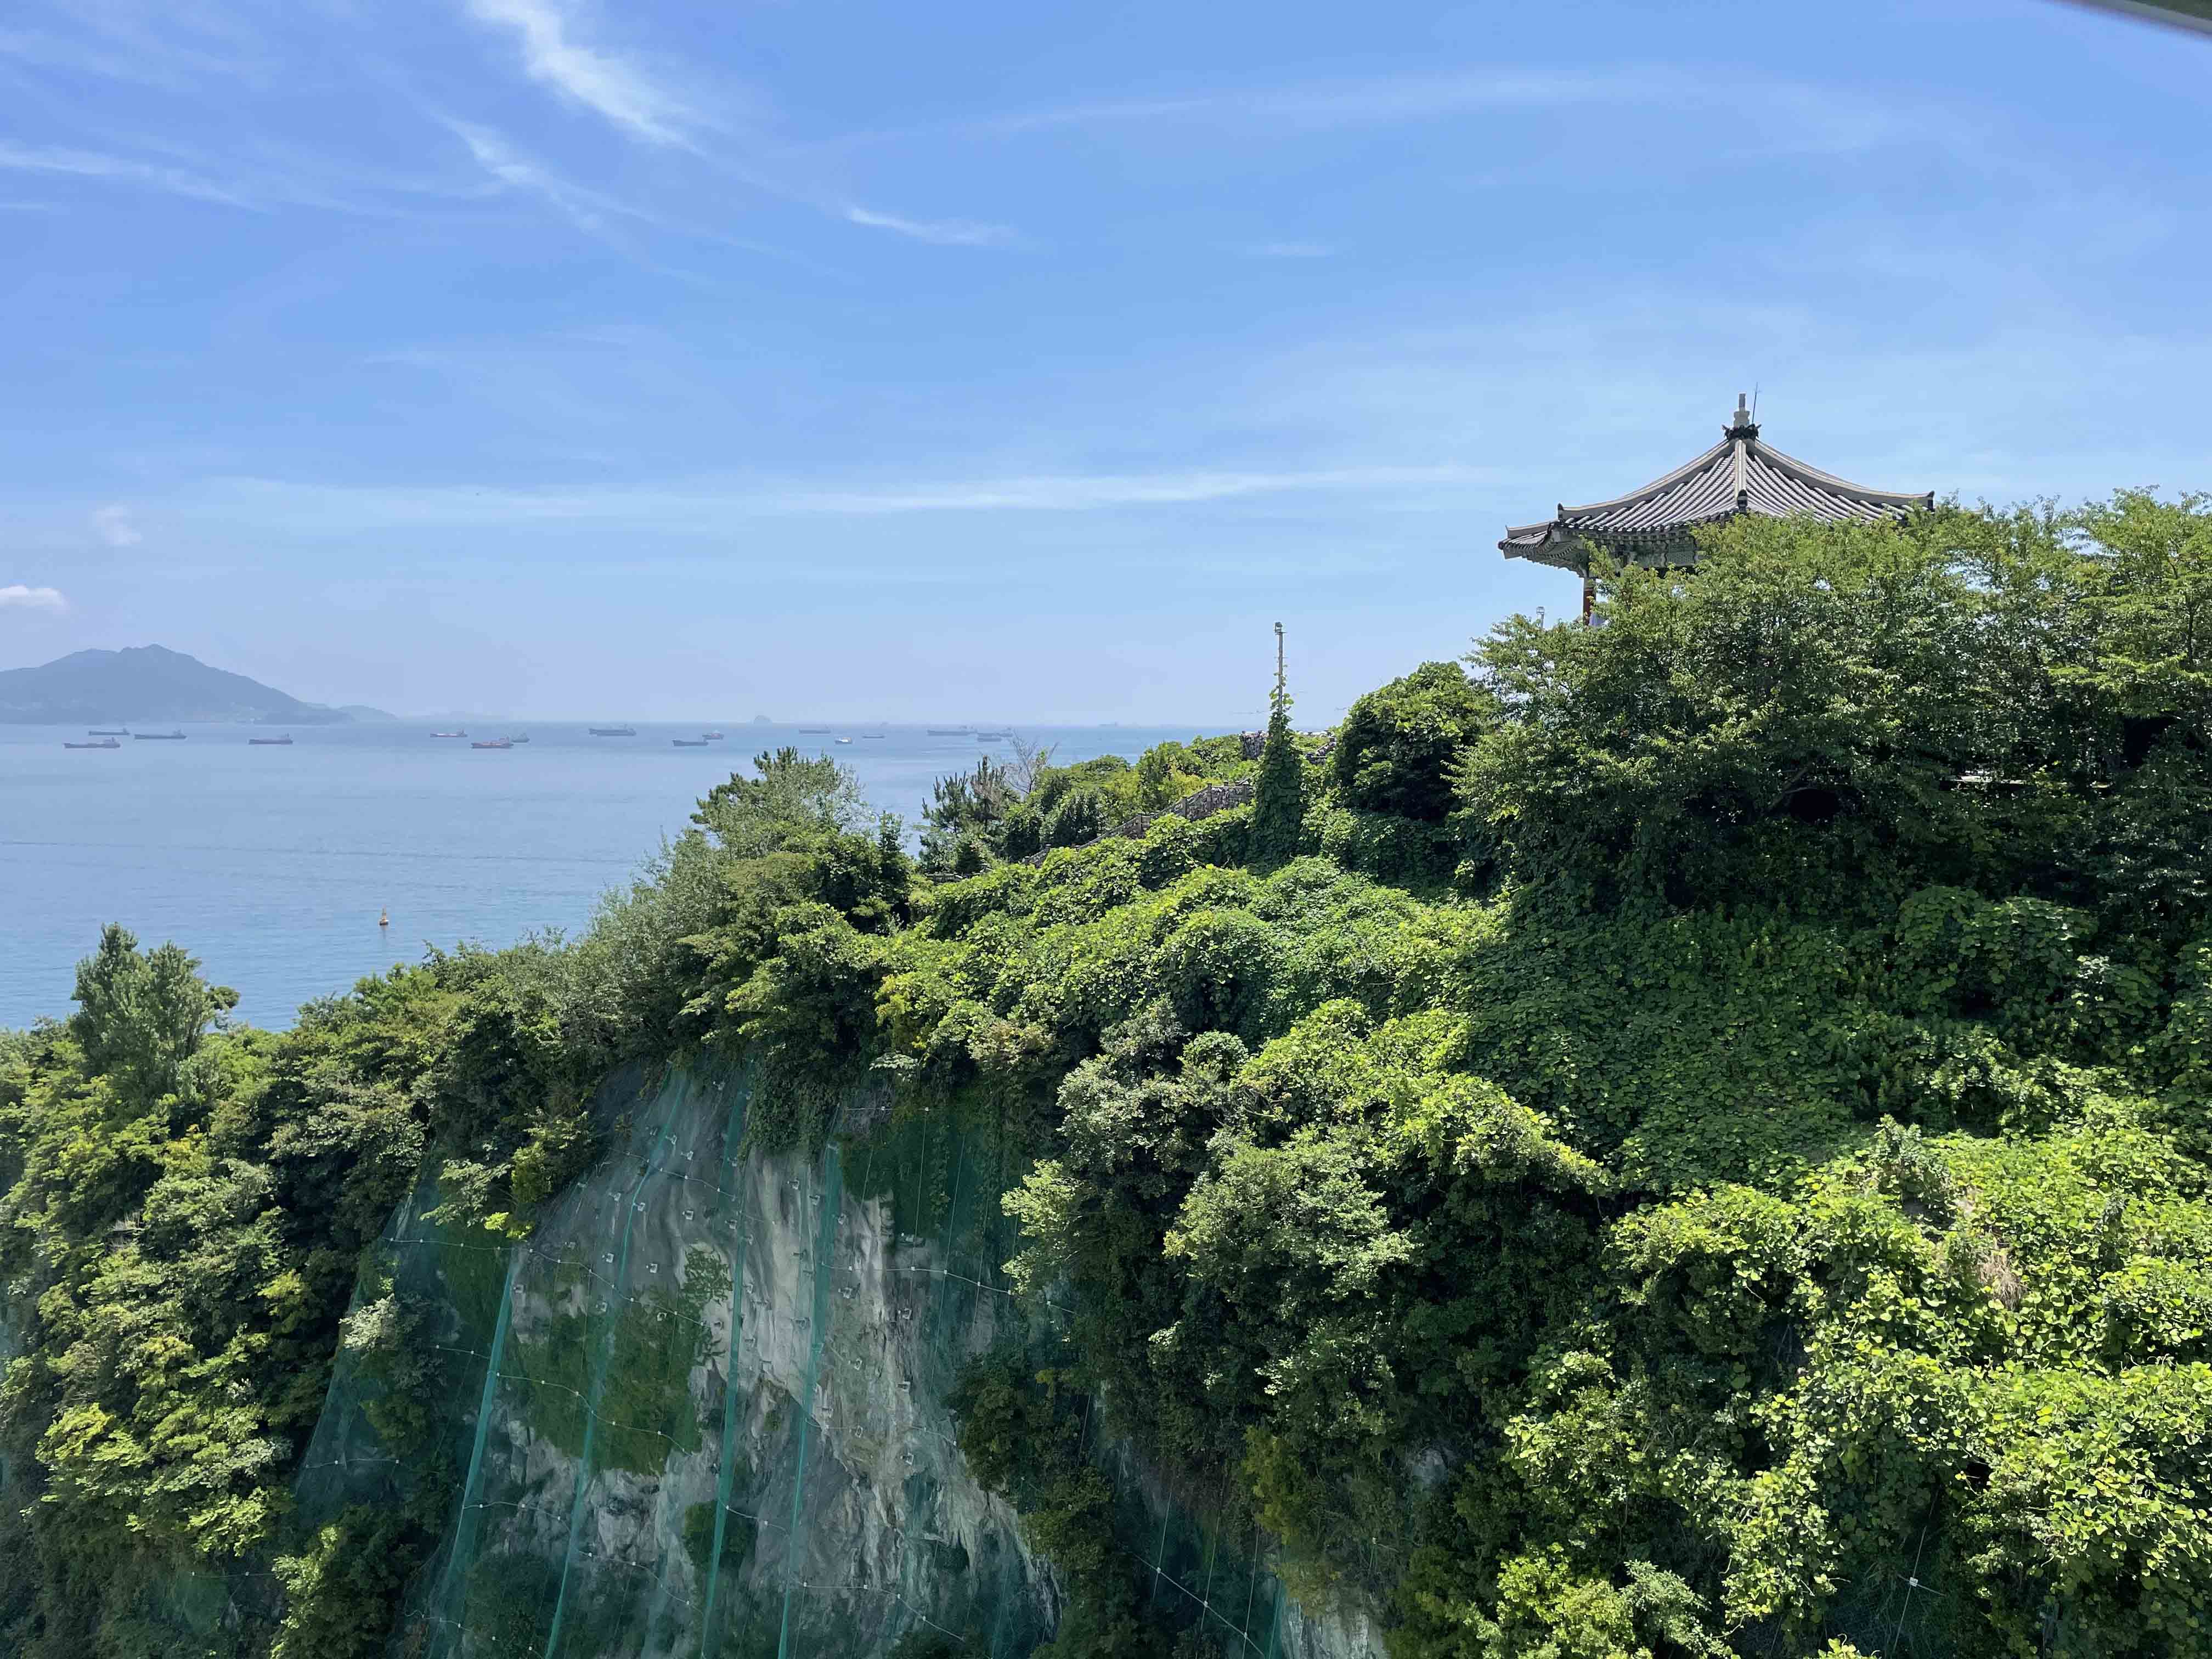 View of the sea from a cliffside in Gwangju, Korea.